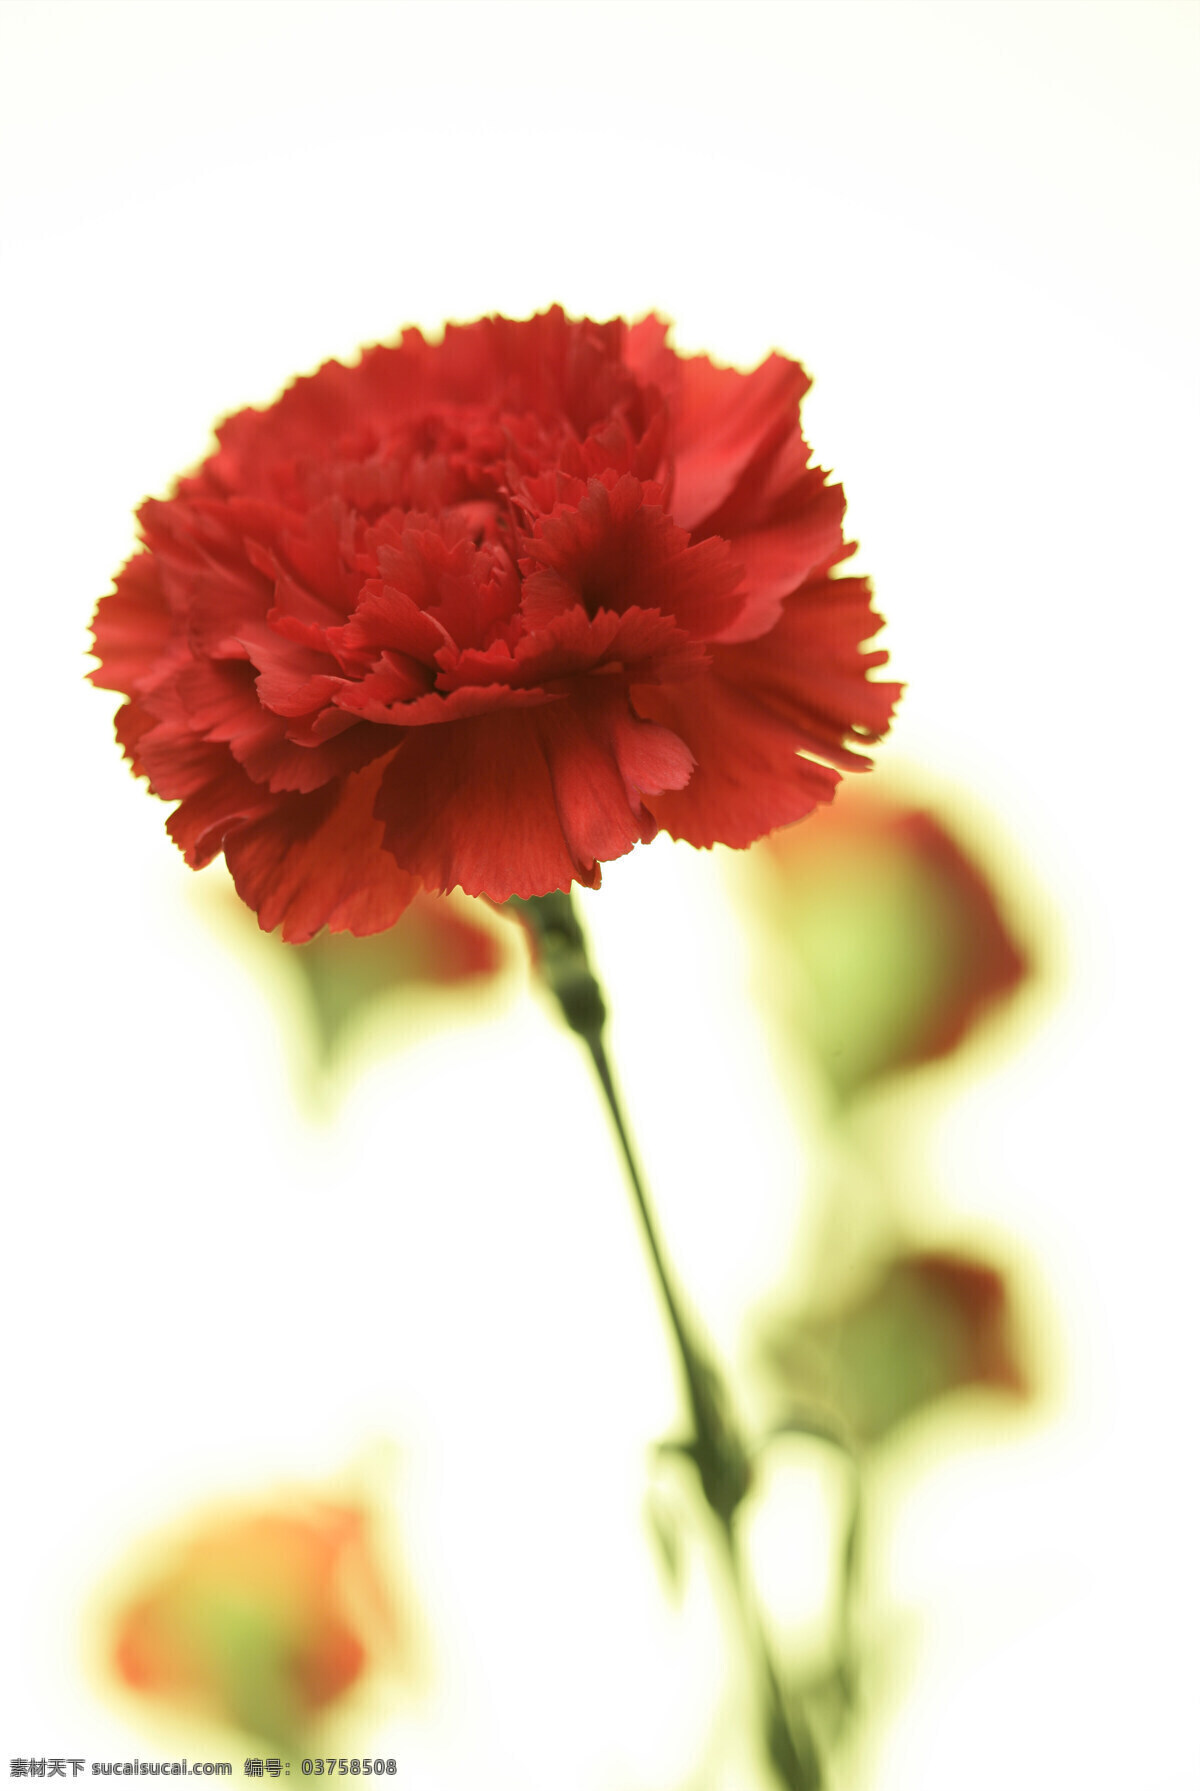 红色康乃馨 康乃馨 红色花朵 红色鲜花 唯美花朵 浪漫鲜花 高清图片